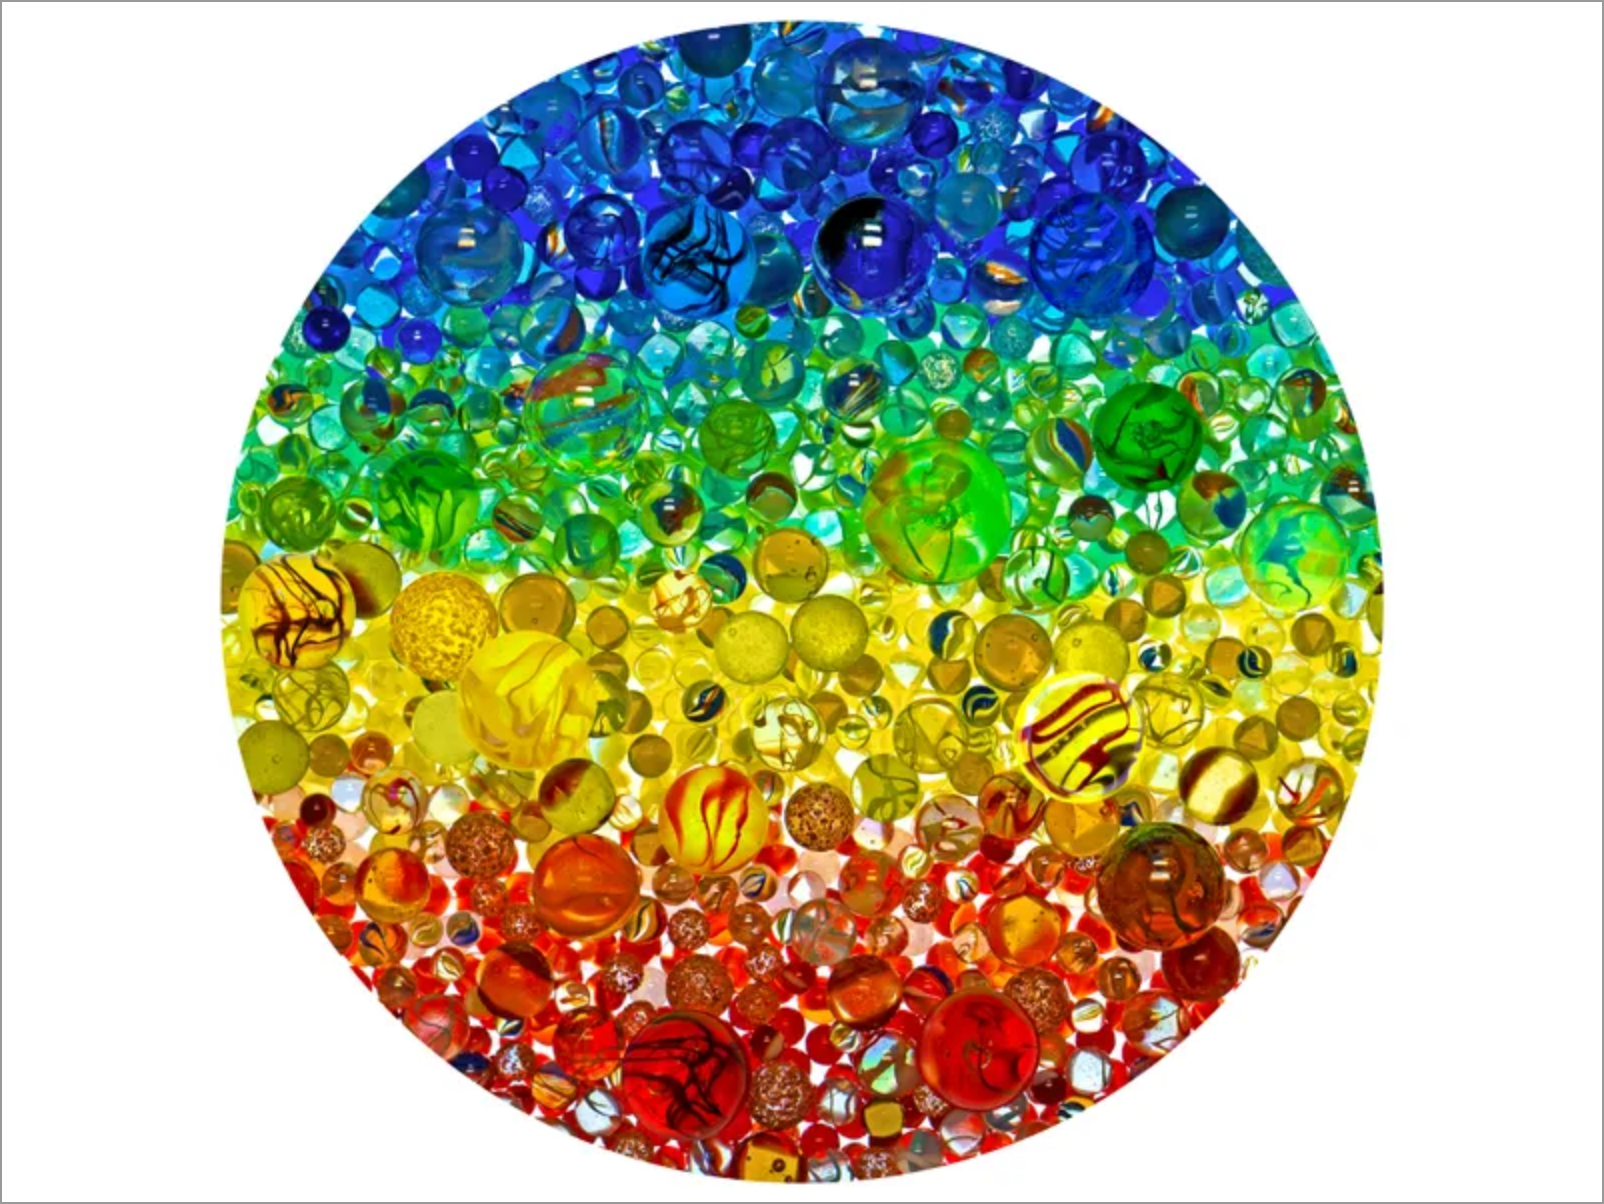 Illuminated Marbles (500 pc puzzle)